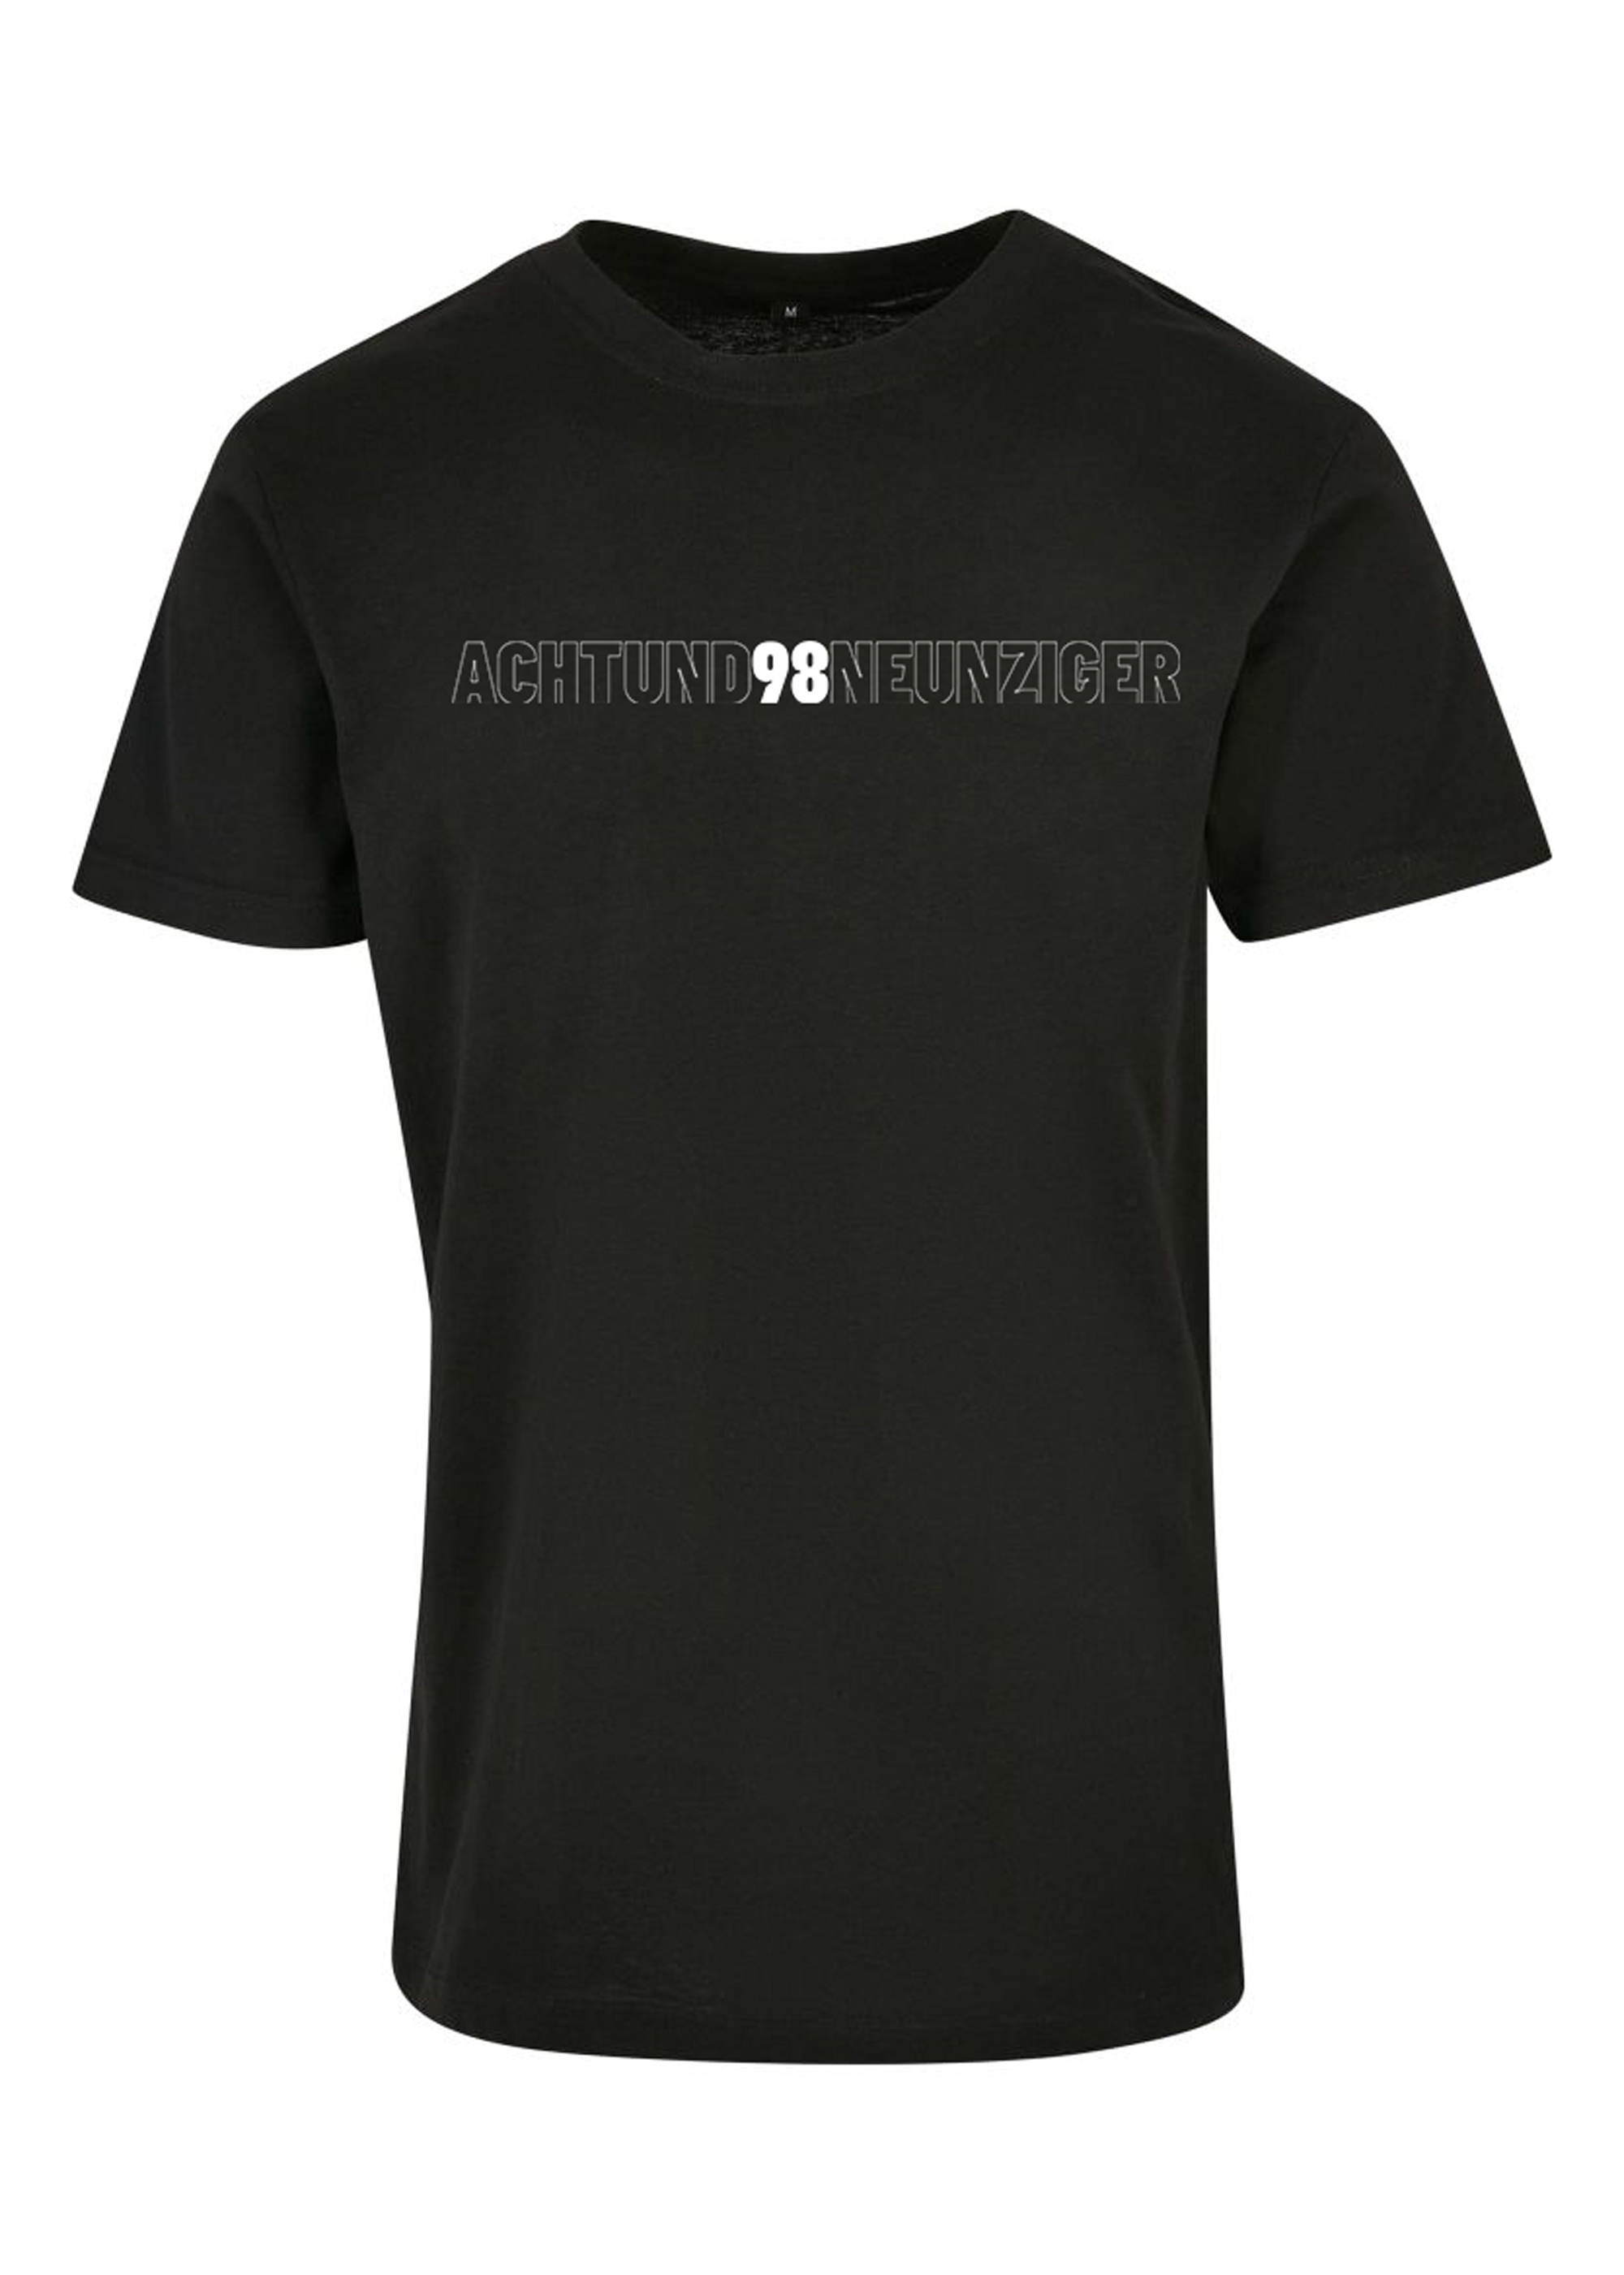 SV 98 POD-Shirt "Achtundneunziger", Doppelprint